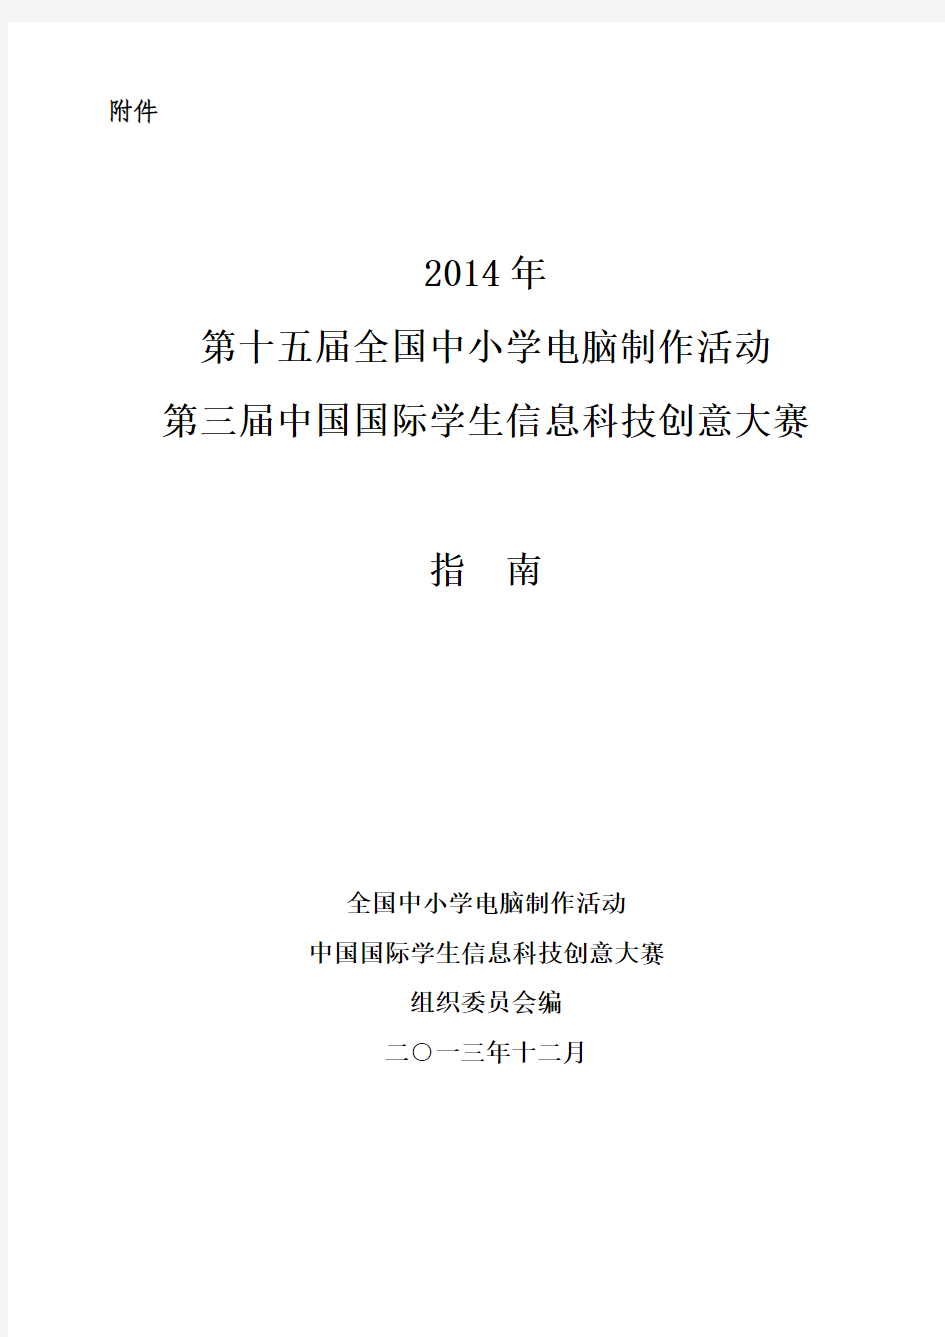 2014中小学电脑制作活动指南(2013年12月10日修订版)